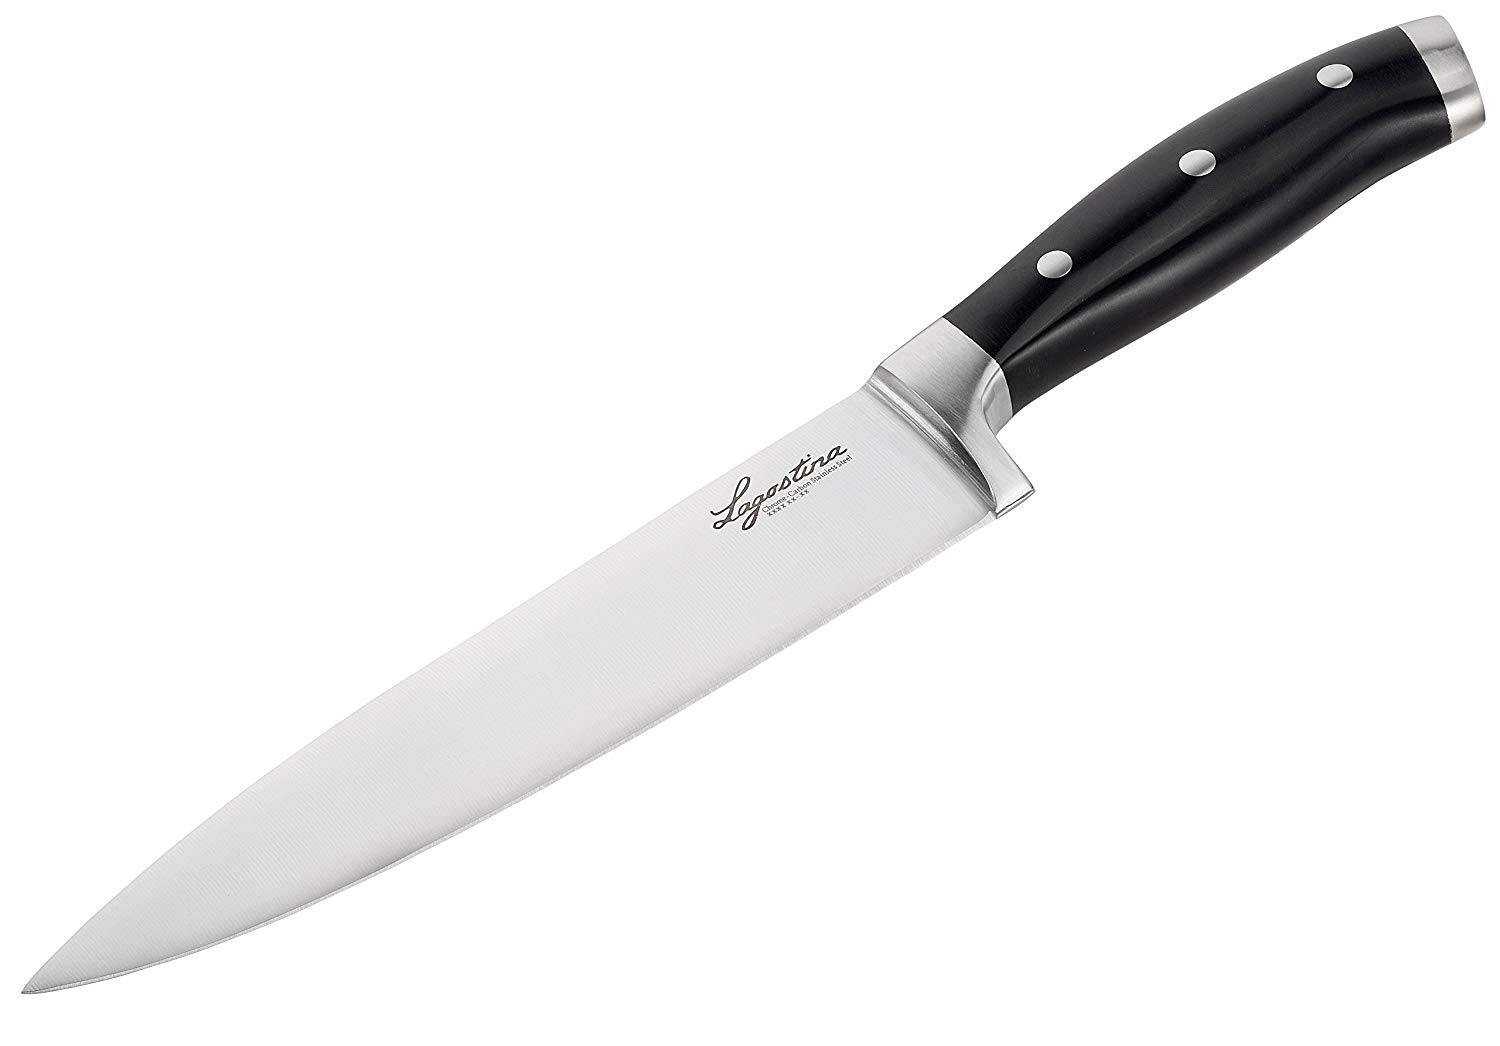 Coltelli giapponesi, perché sceglierli? perché i coltelli asiatici stanno conquistando le nostre cucine?